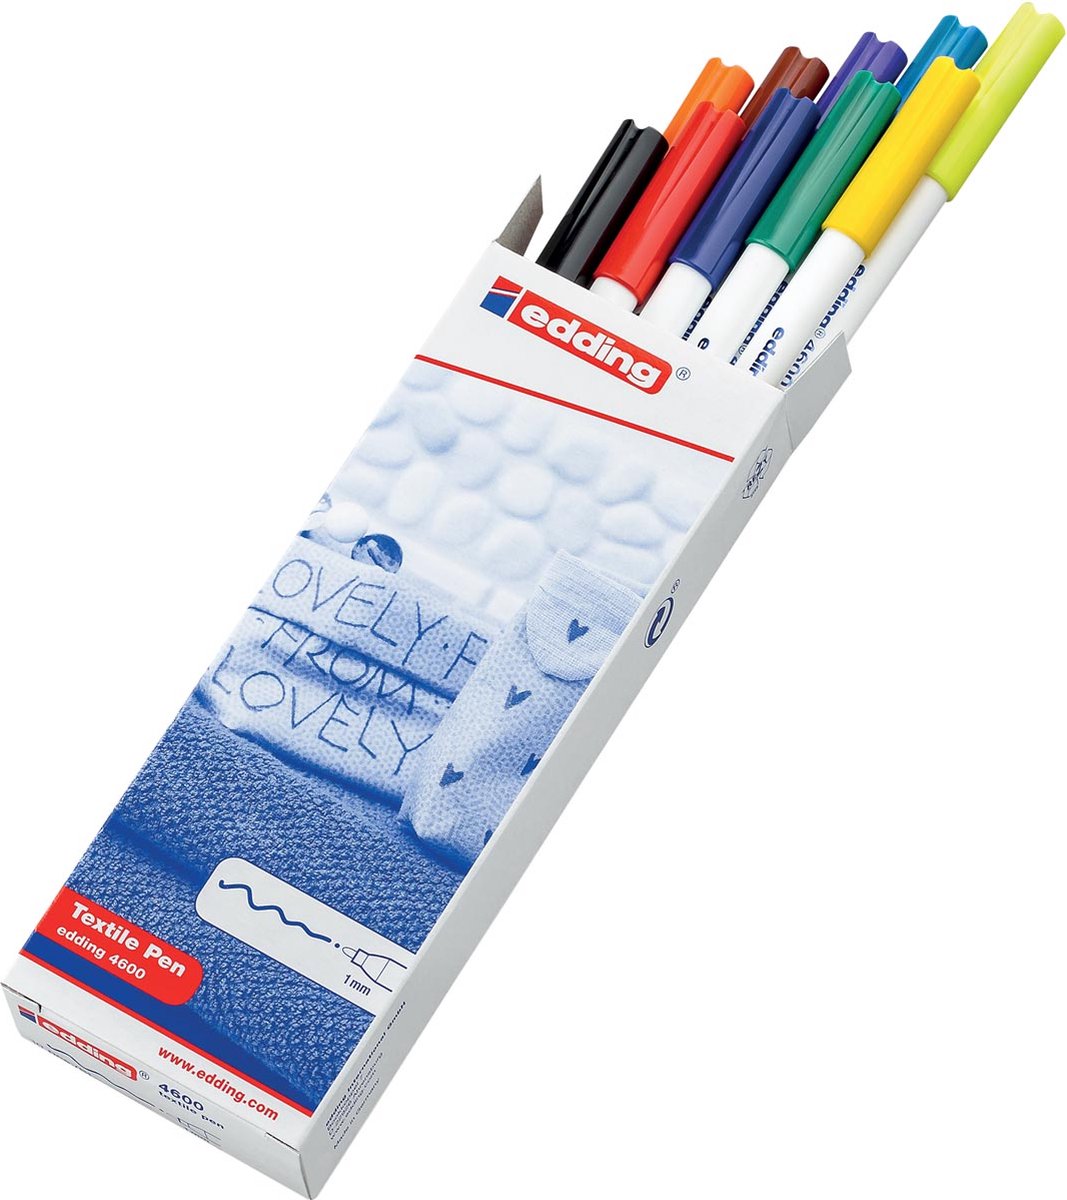 edding textielstiften 4600 - Set van 10 textielmarkers - Diverse kleuren - Watervaste inkt